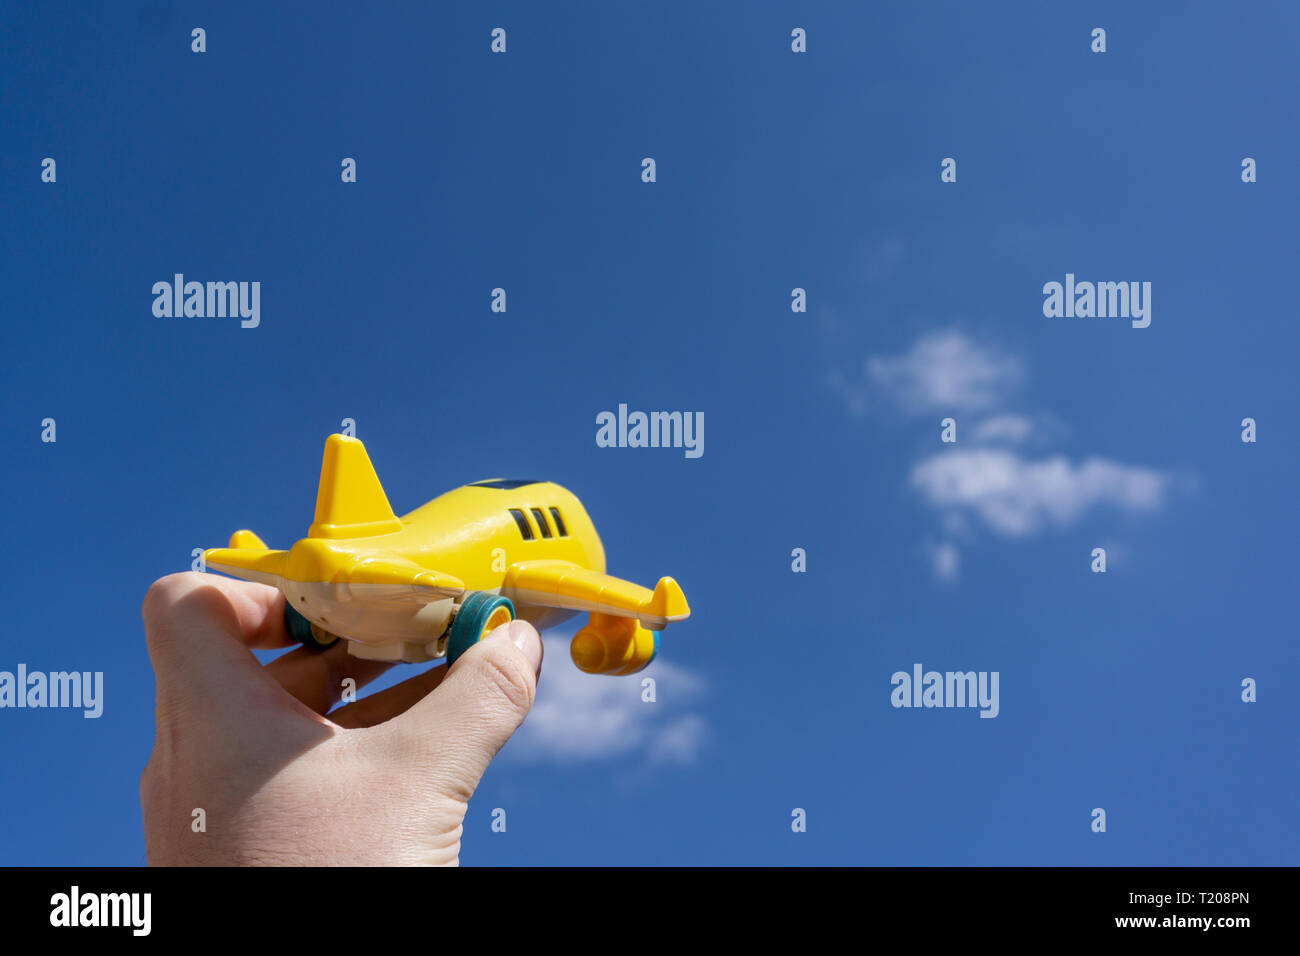 Giallo piano giocattolo in volo per il bel cielo azzurro, lo spazio negativo, concetto di andare a fare una vacanza magica, una destinazione da sogno Foto Stock